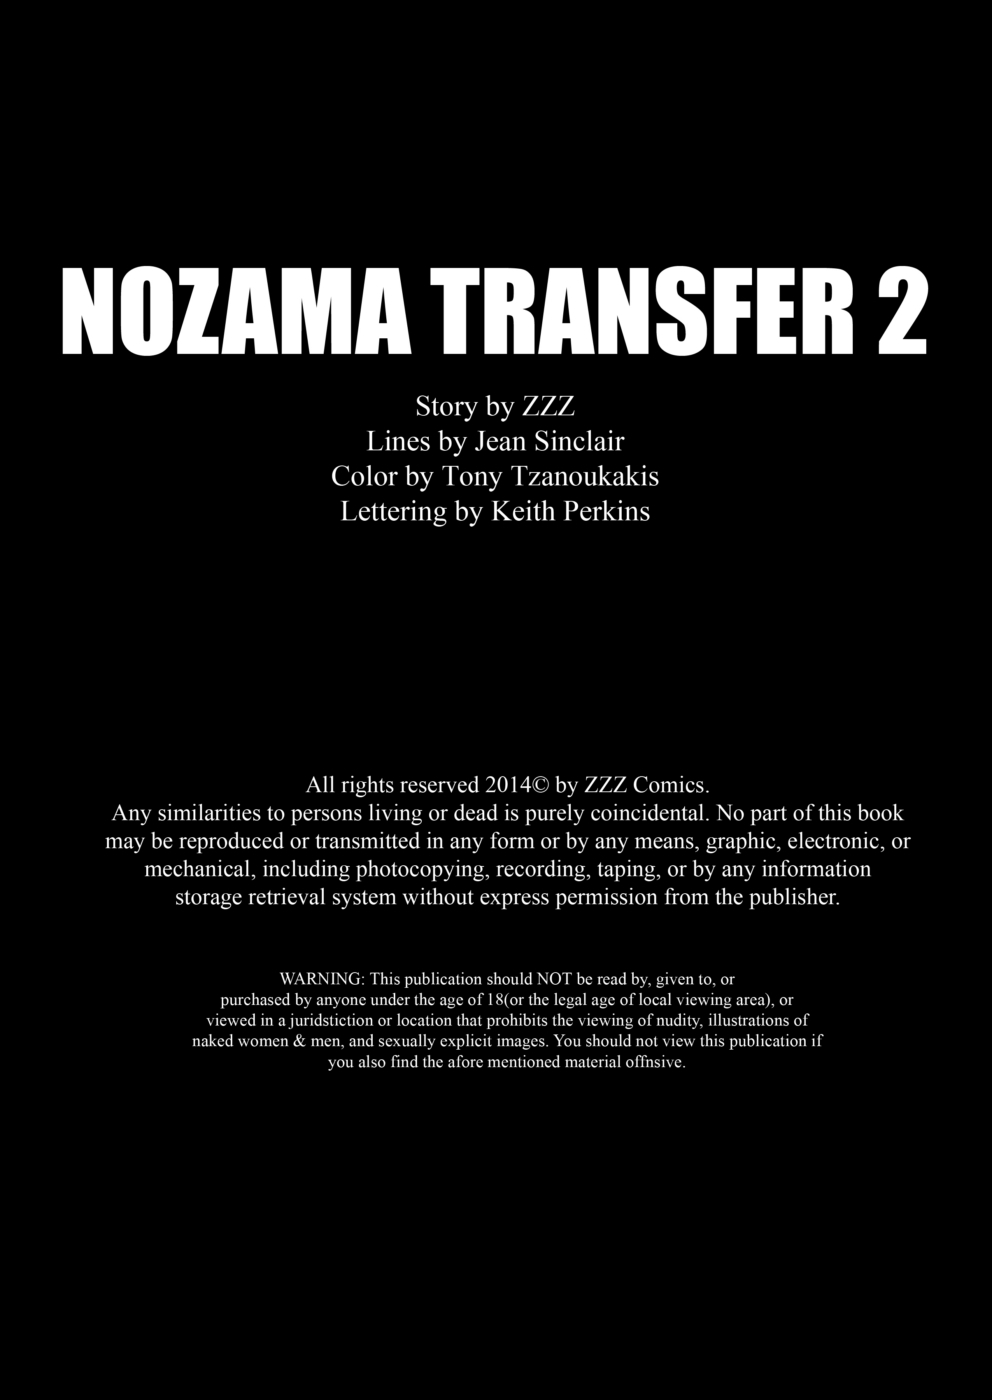 zzz nozama transferência 2